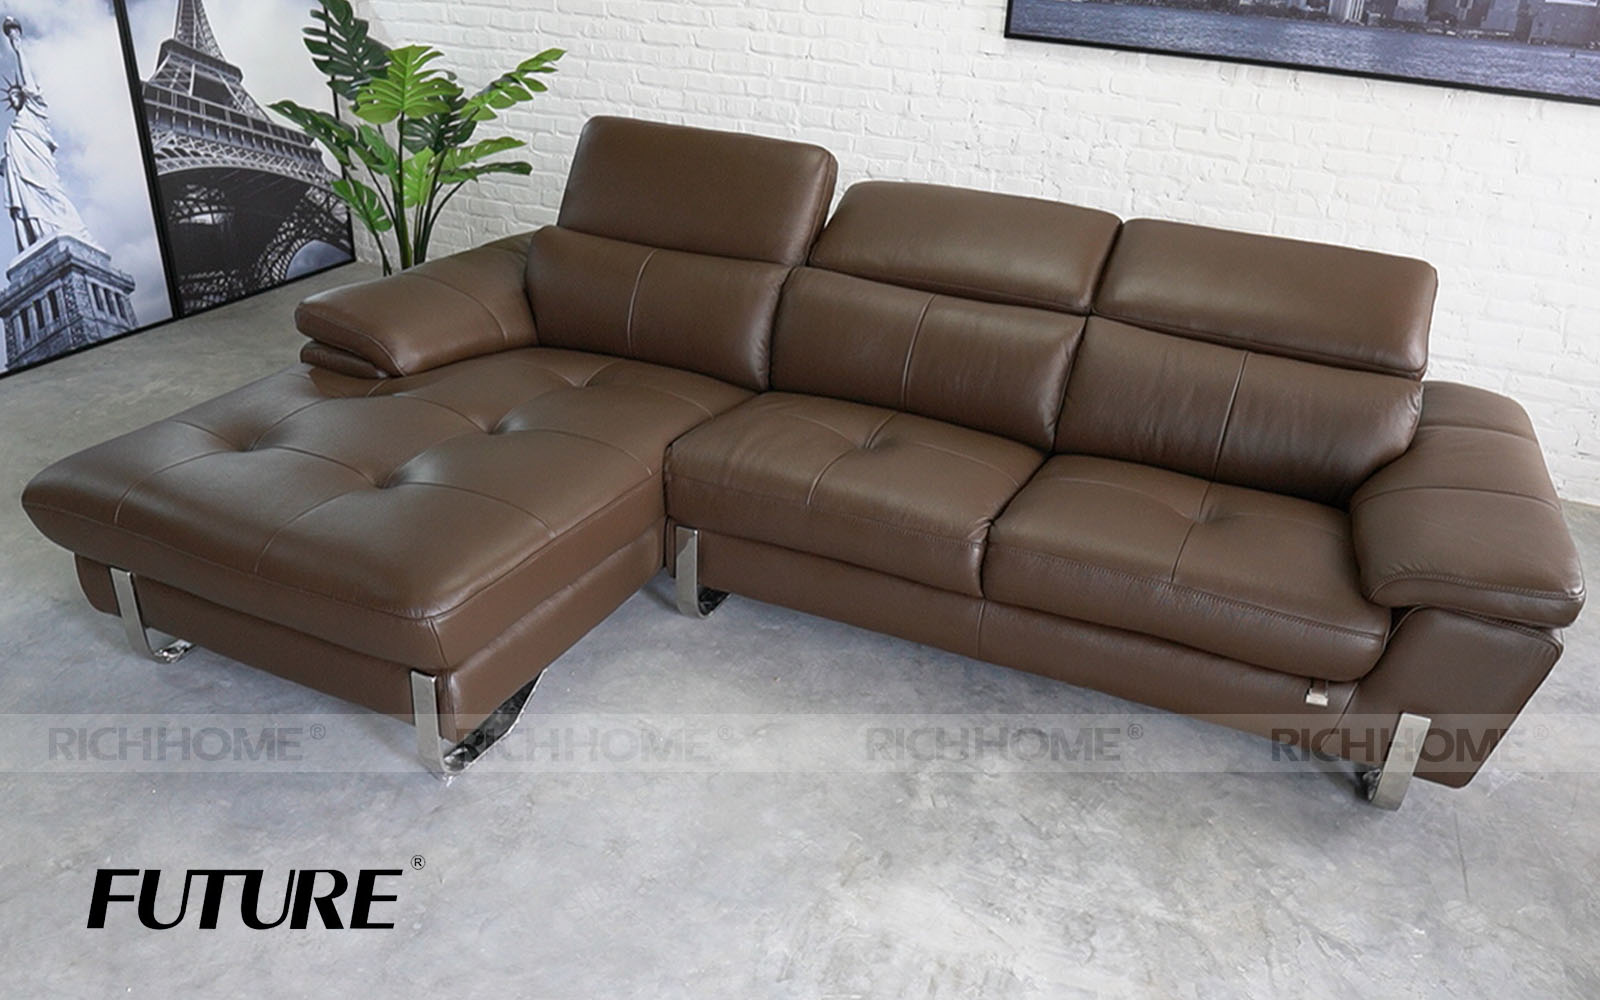 12 mẫu sofa da bò góc chữ L mẫu siêu mới siêu Hot - Ảnh 3